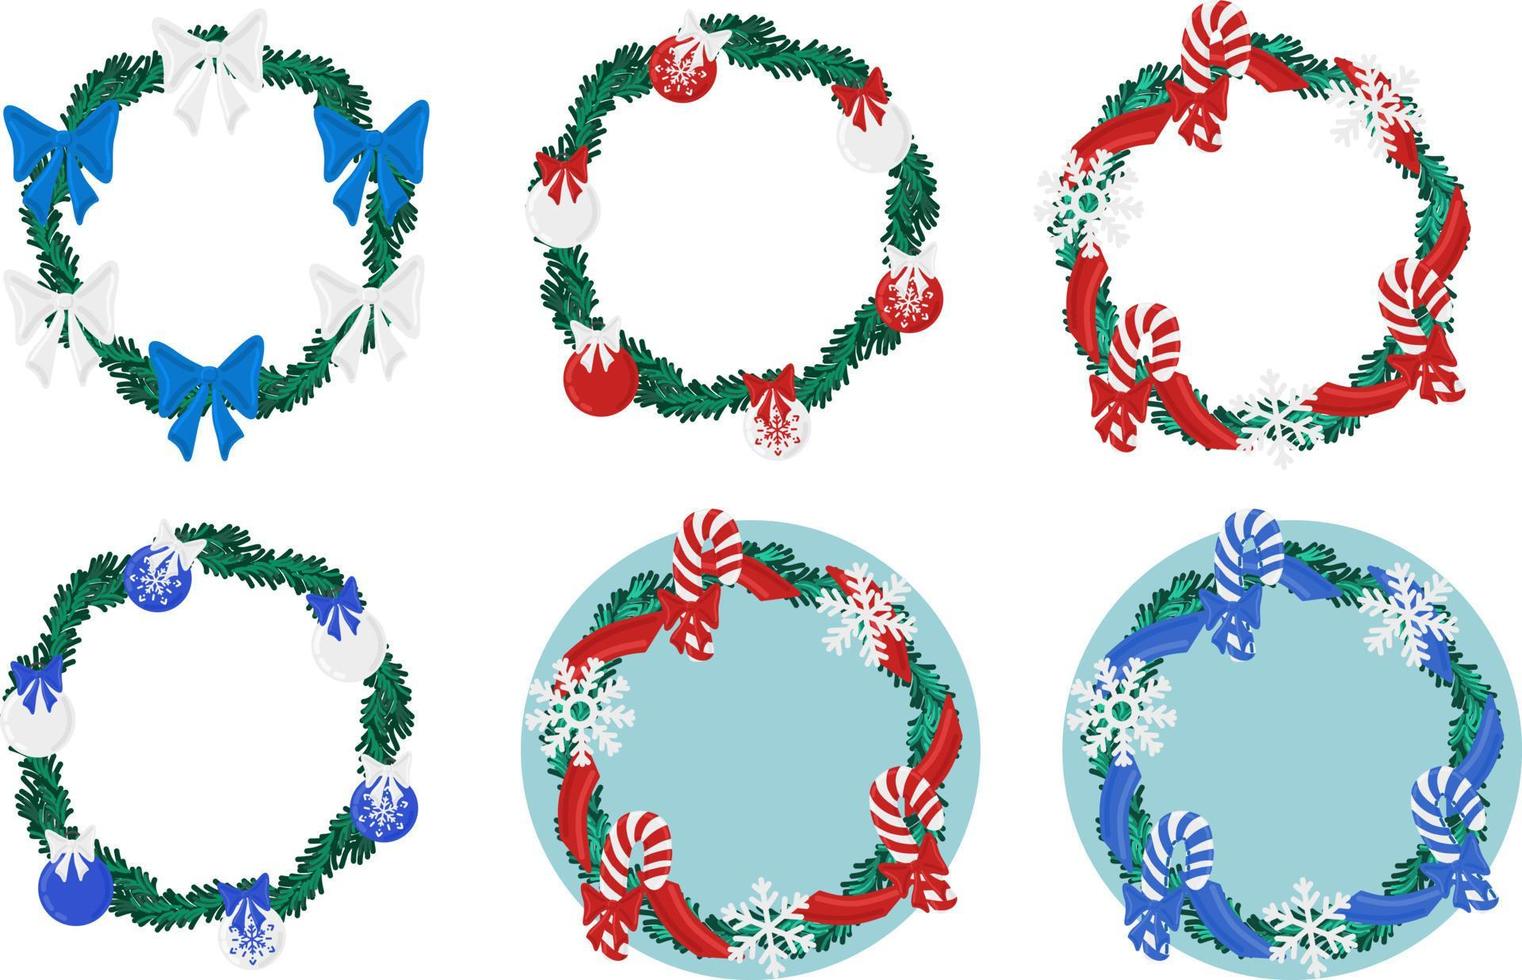 Weihnachtsfeiertag runder Kranzrahmen mit immergrüner Kollektion. Urlaub fördern Plakat- oder Grußkartenelemente vektor